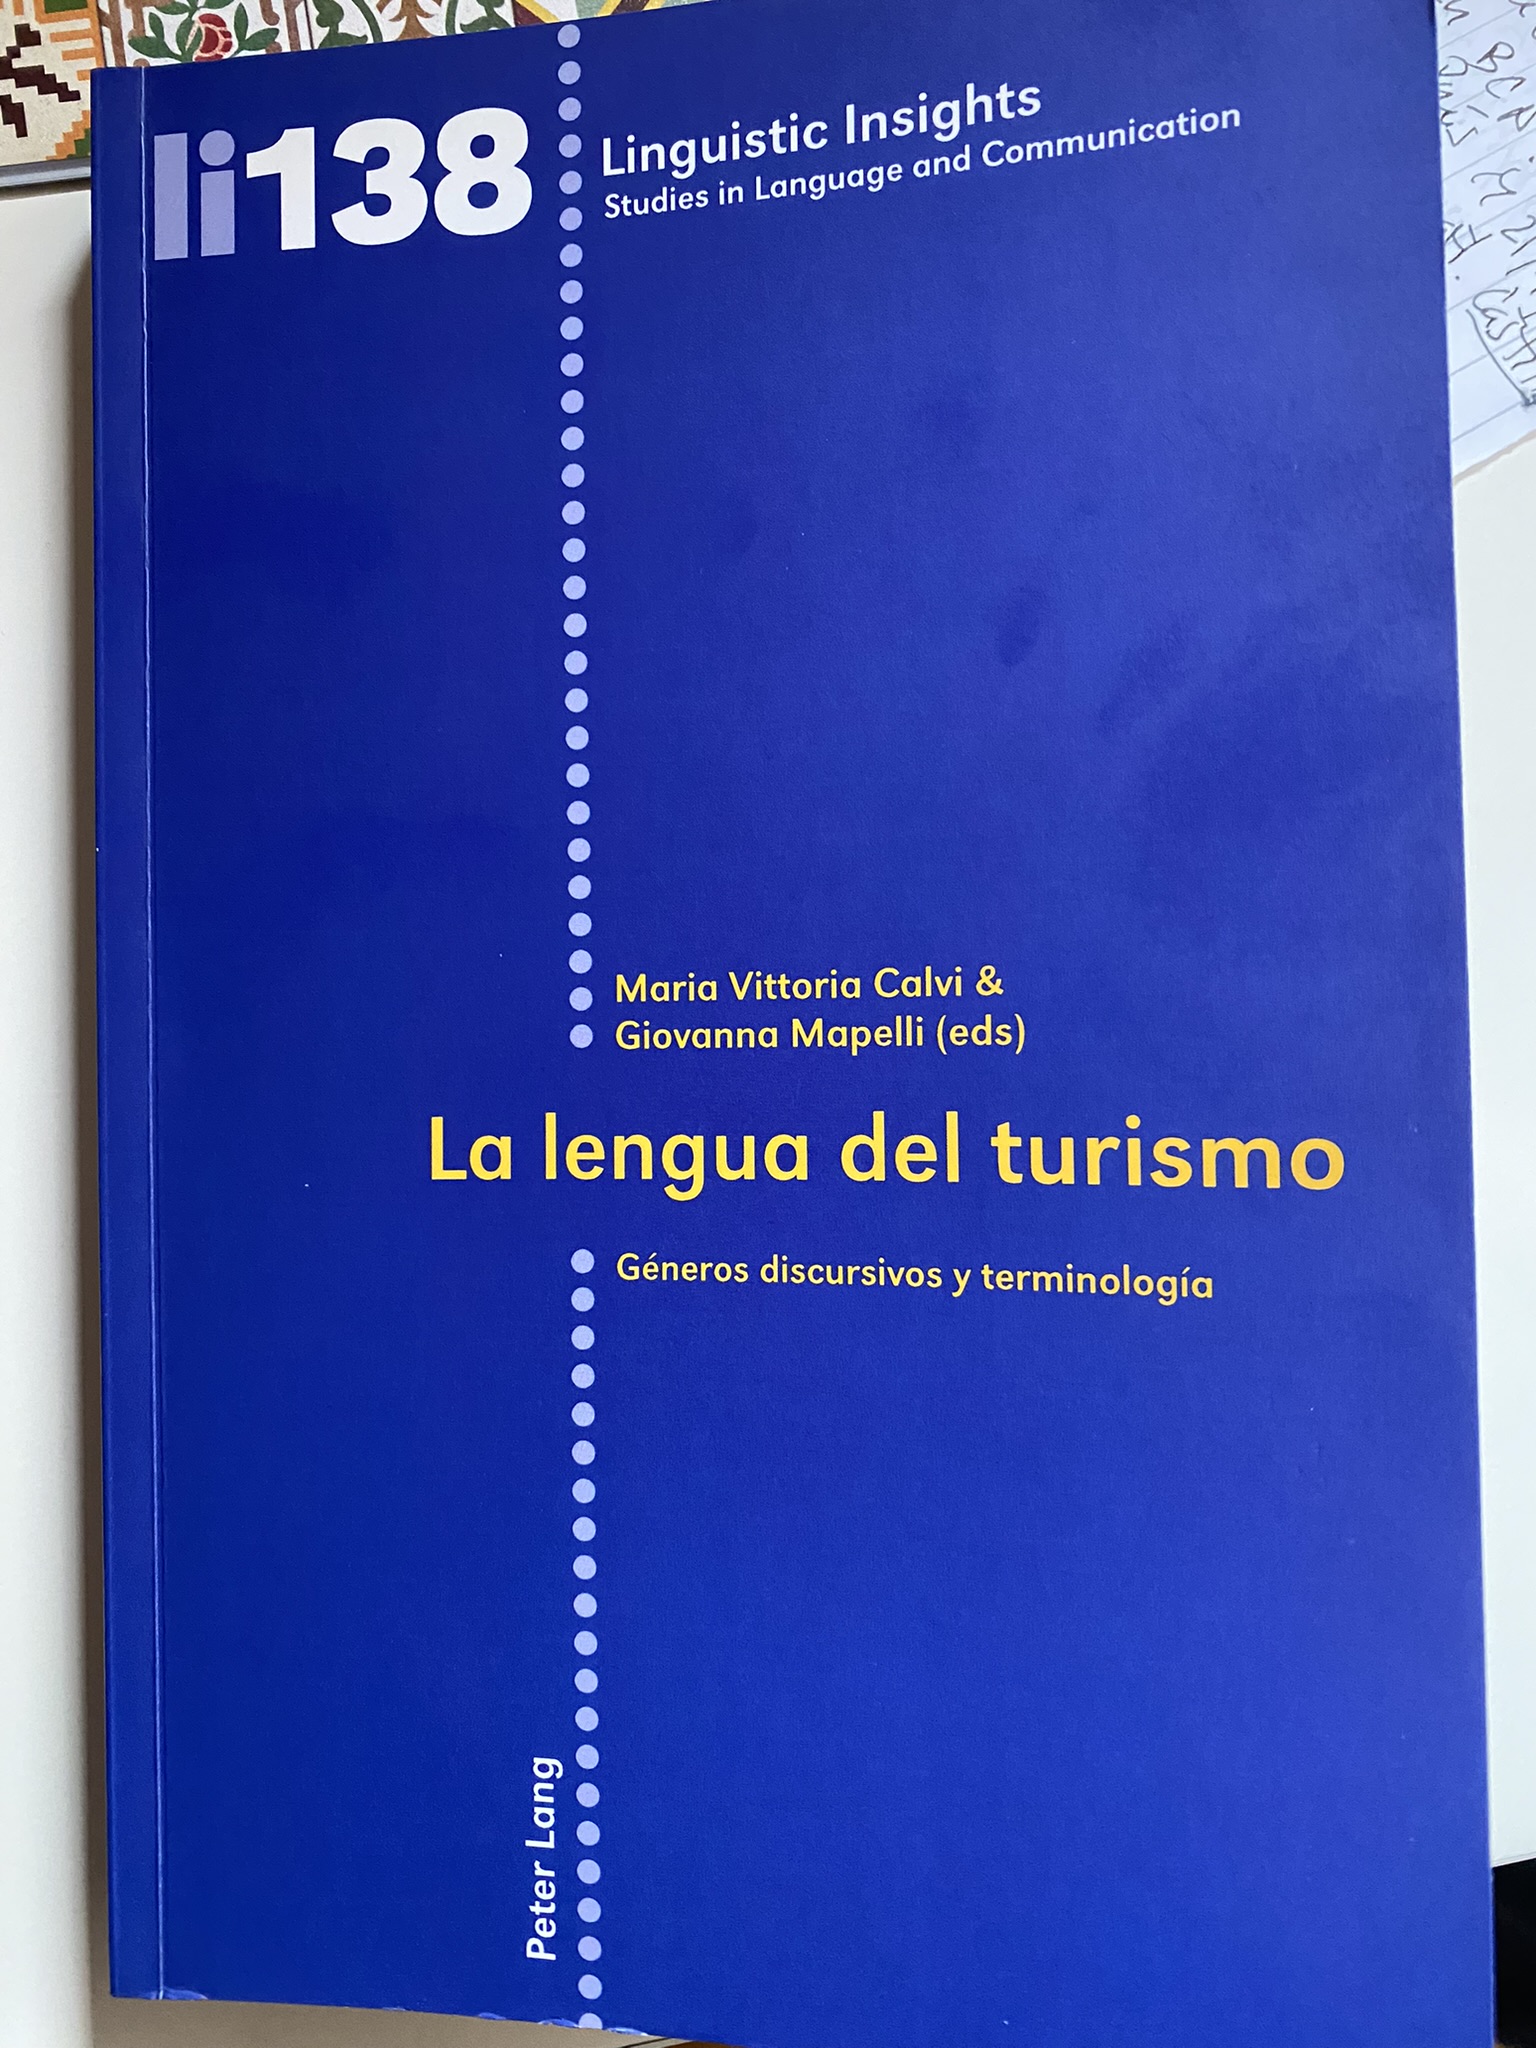 Imagen de portada del libro La lengua del turismo